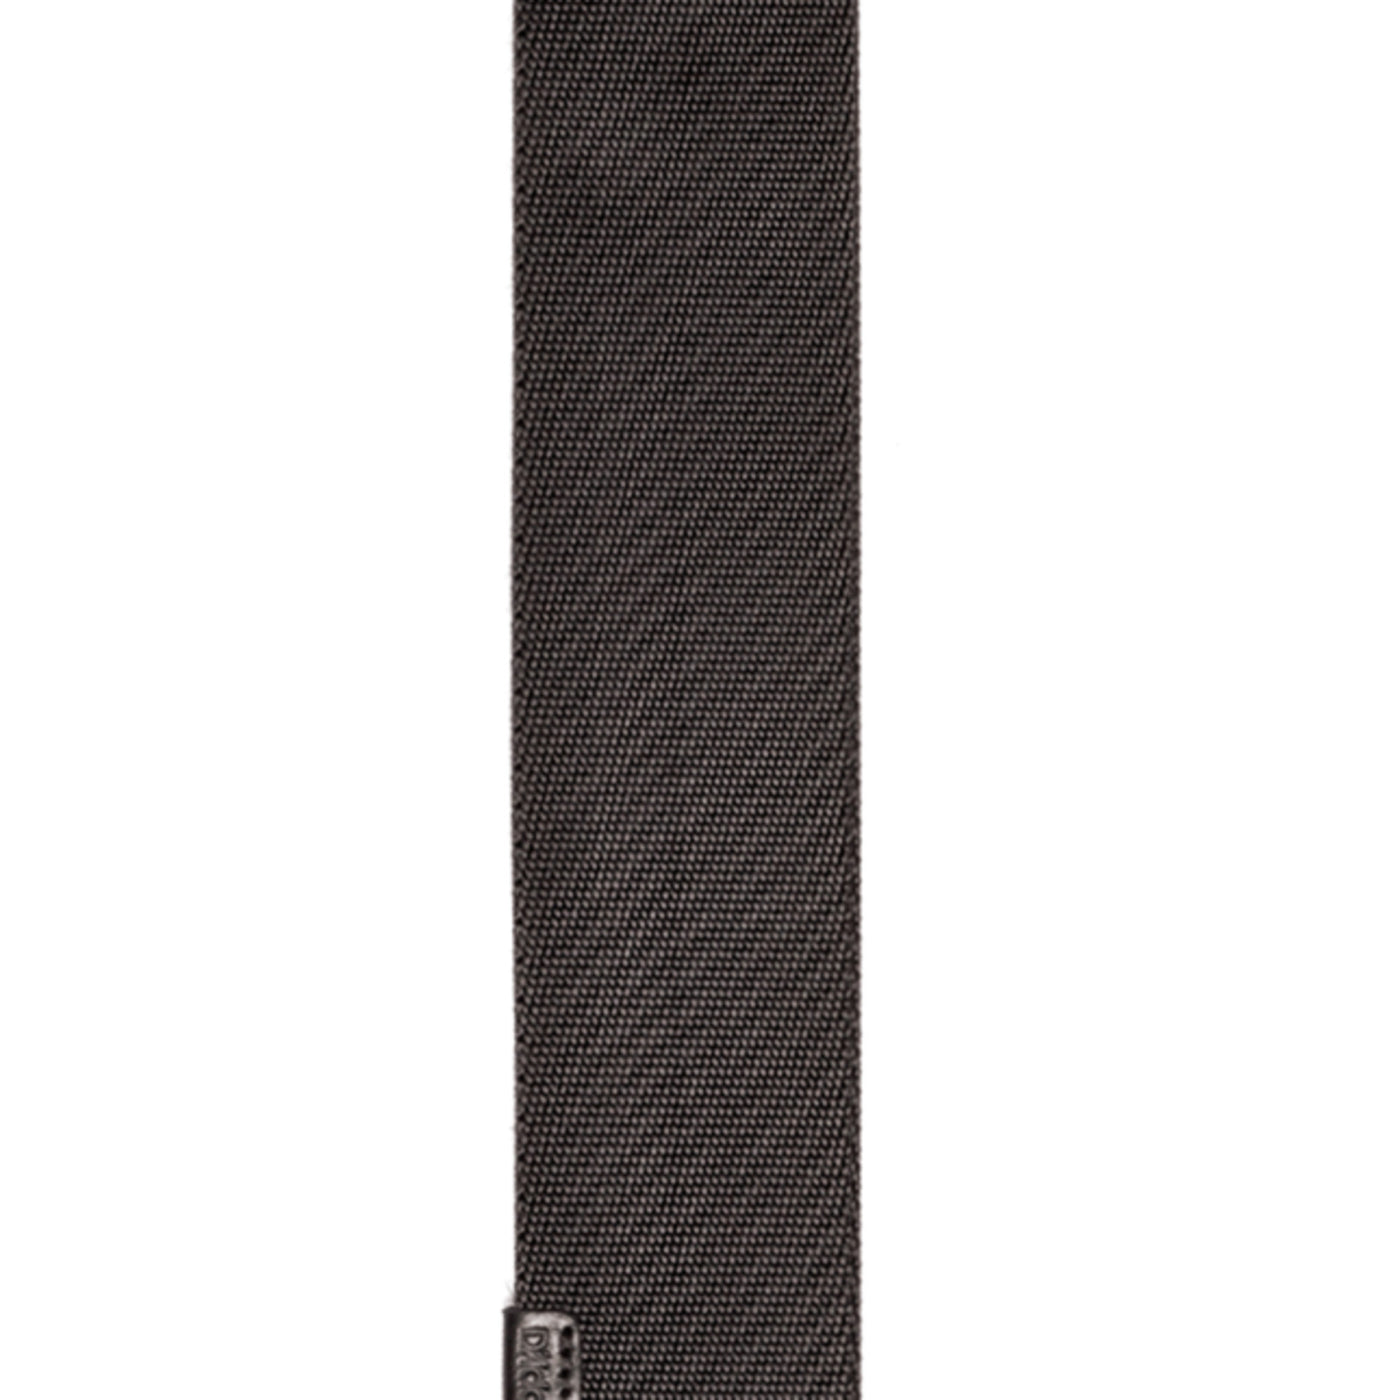 D'Addario Premium Woven Strap, Black (50PRW00)